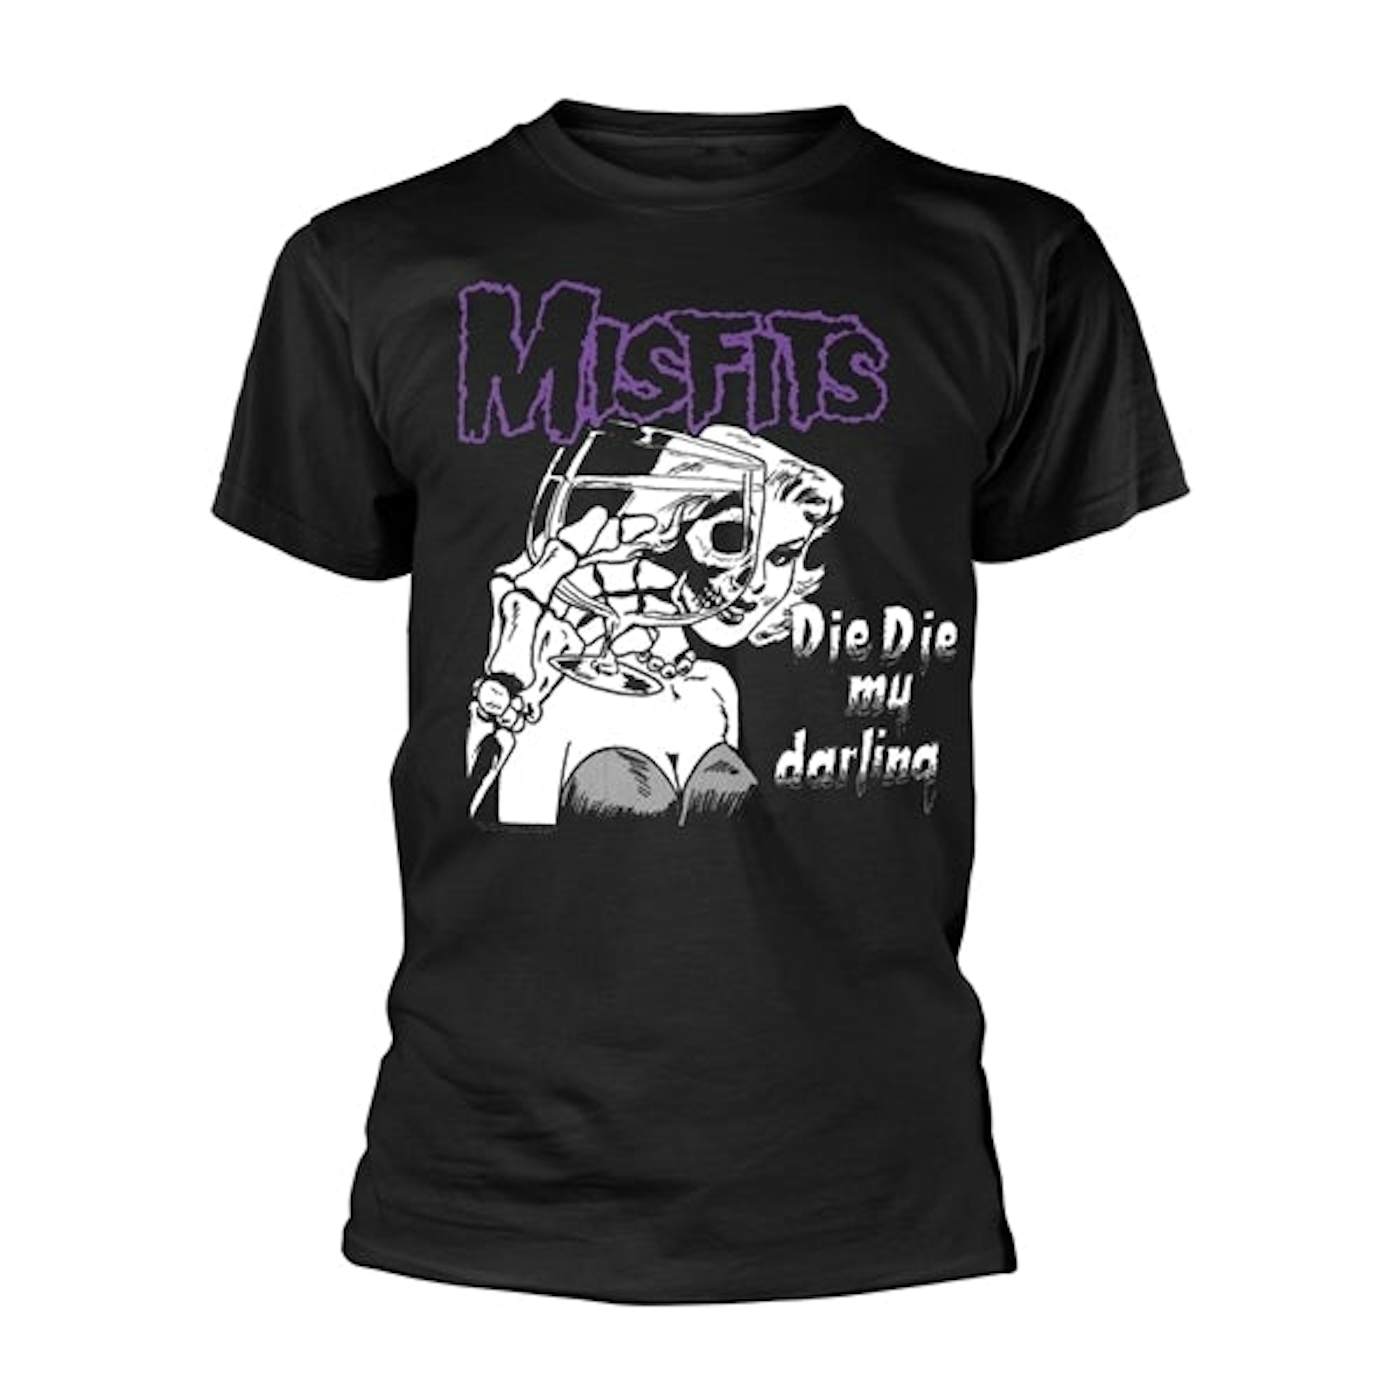 Misfits T-Shirt - Die Die My Darling